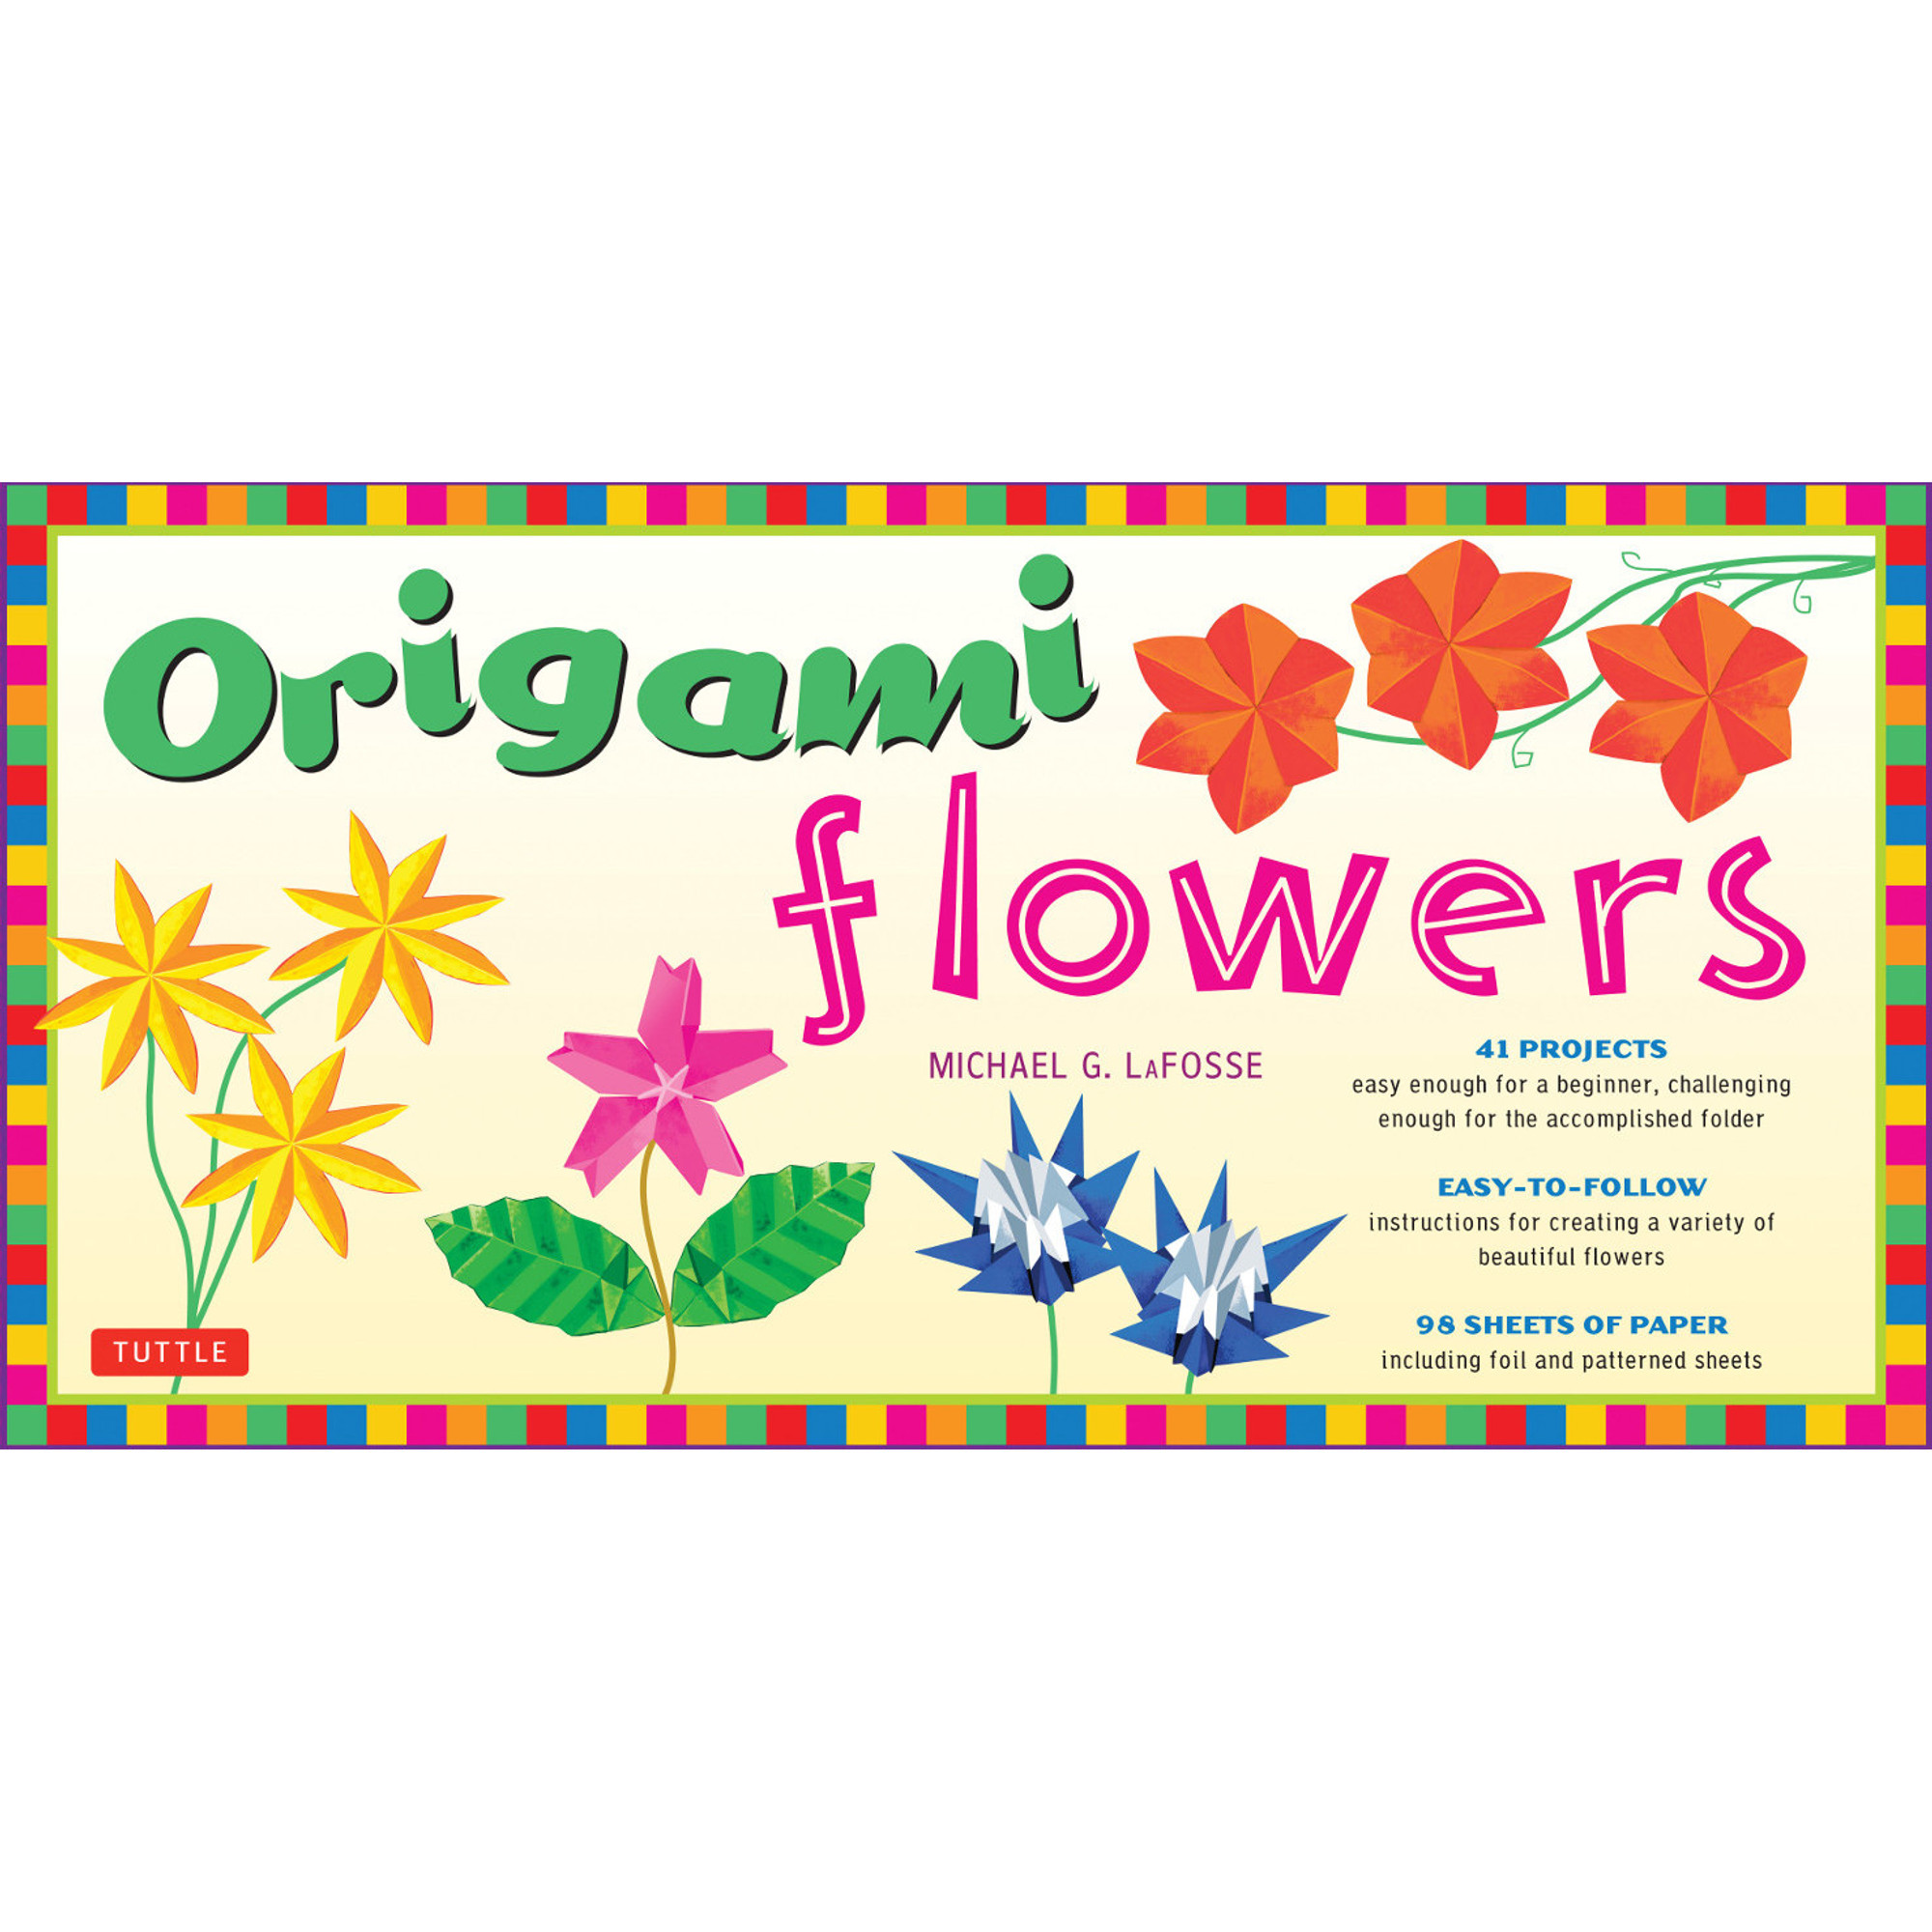 Flower Origami Kit – Children's Nebraska